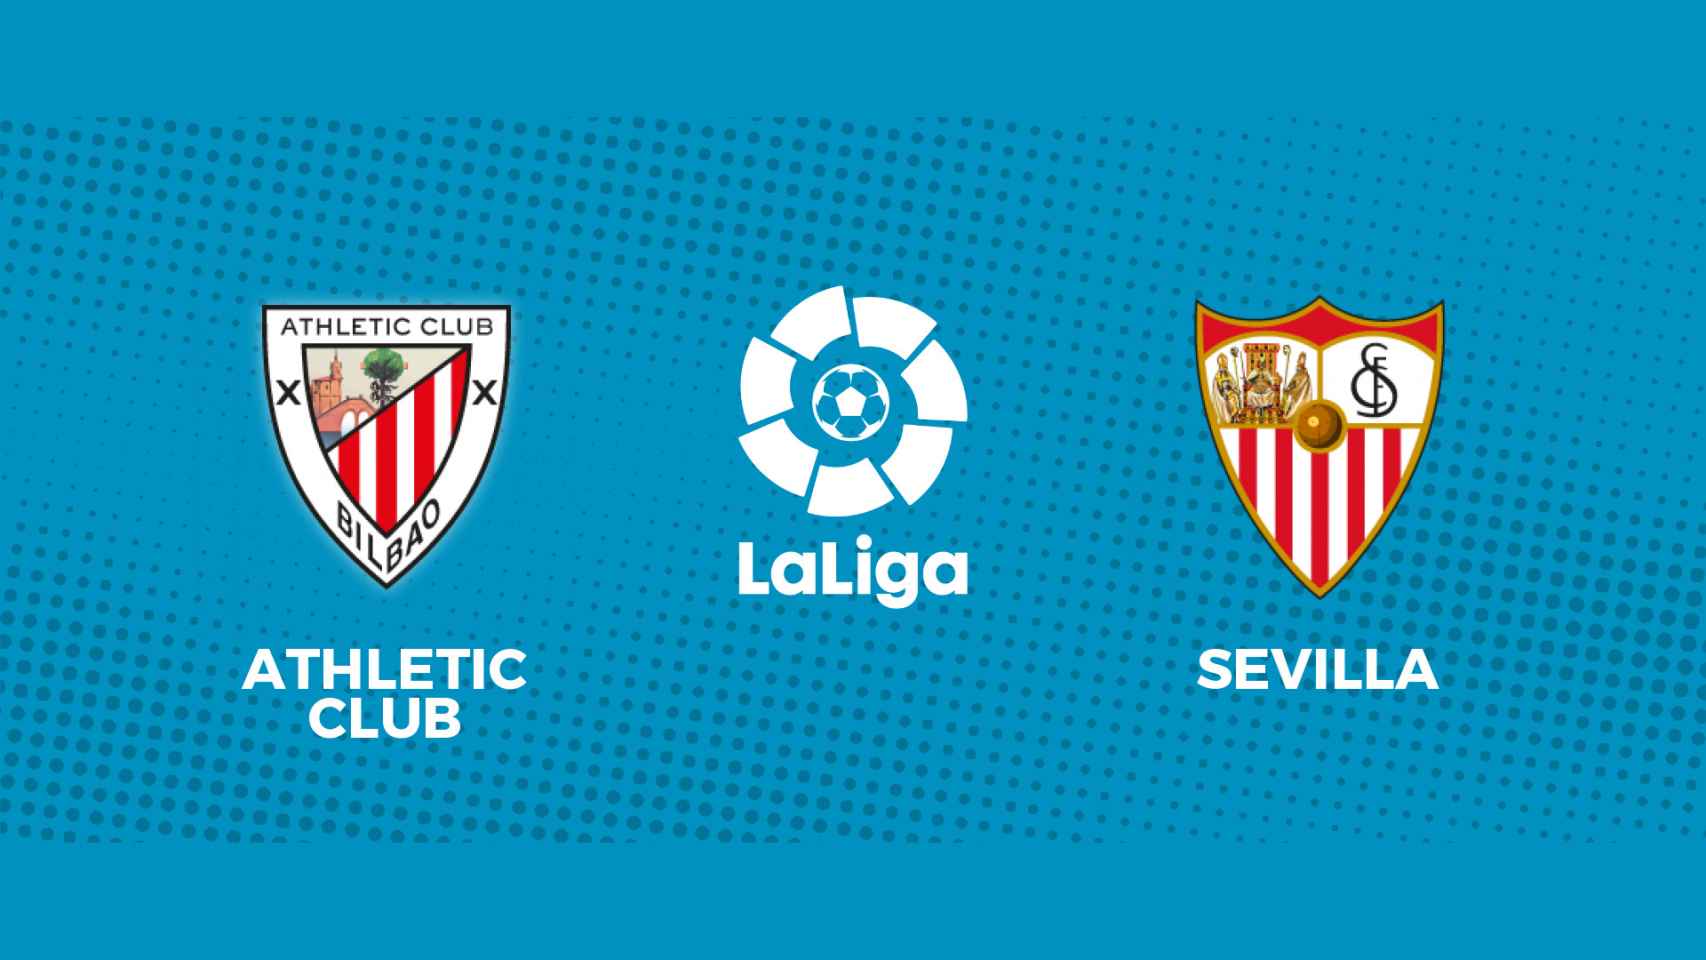 Athletic - Sevilla, La Liga en directo